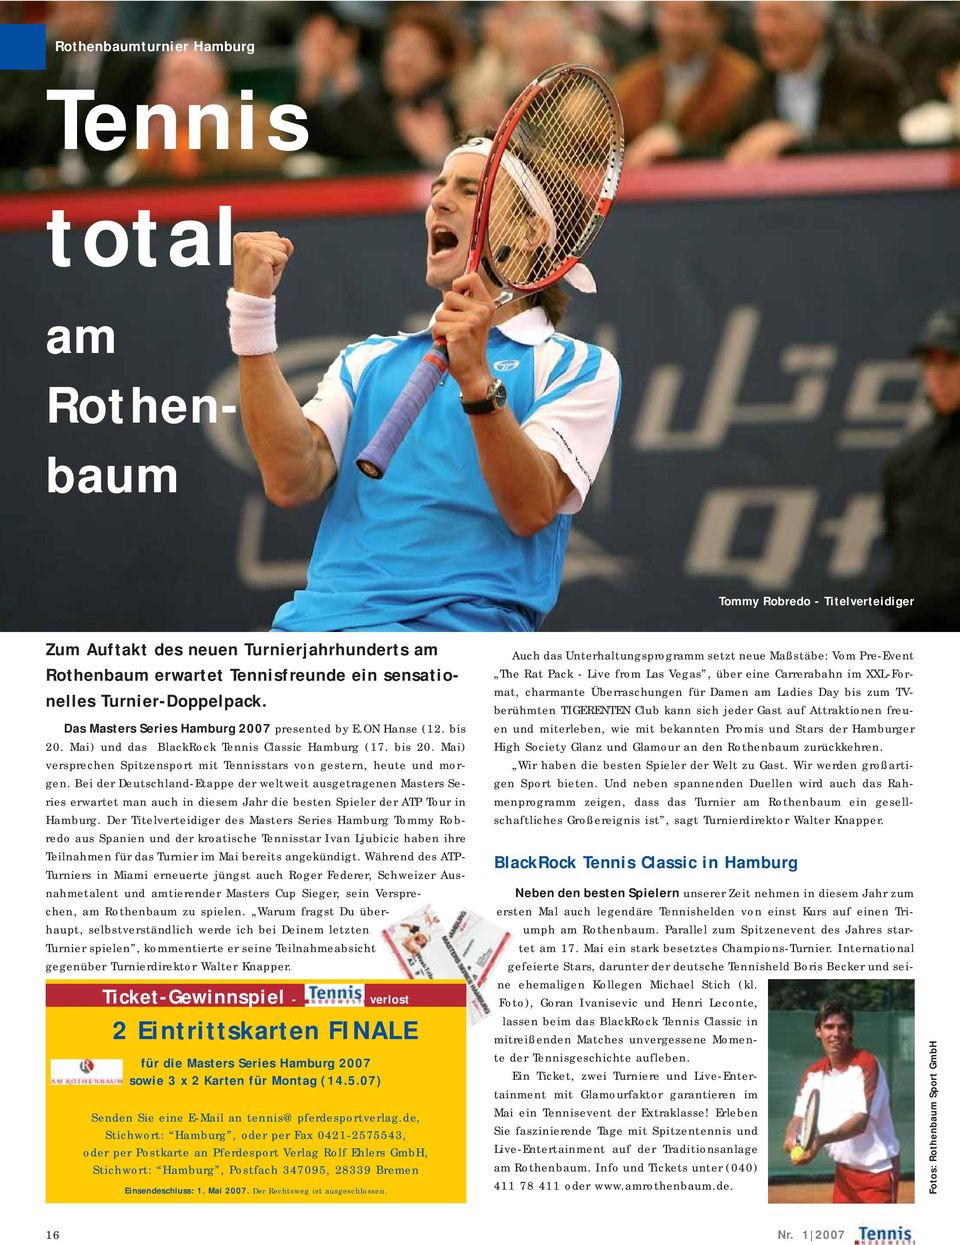 Bei der Deutschland-Etappe der weltweit ausgetragenen Masters Series erwartet man auch in diesem Jahr die besten Spieler der ATP Tour in Hamburg.